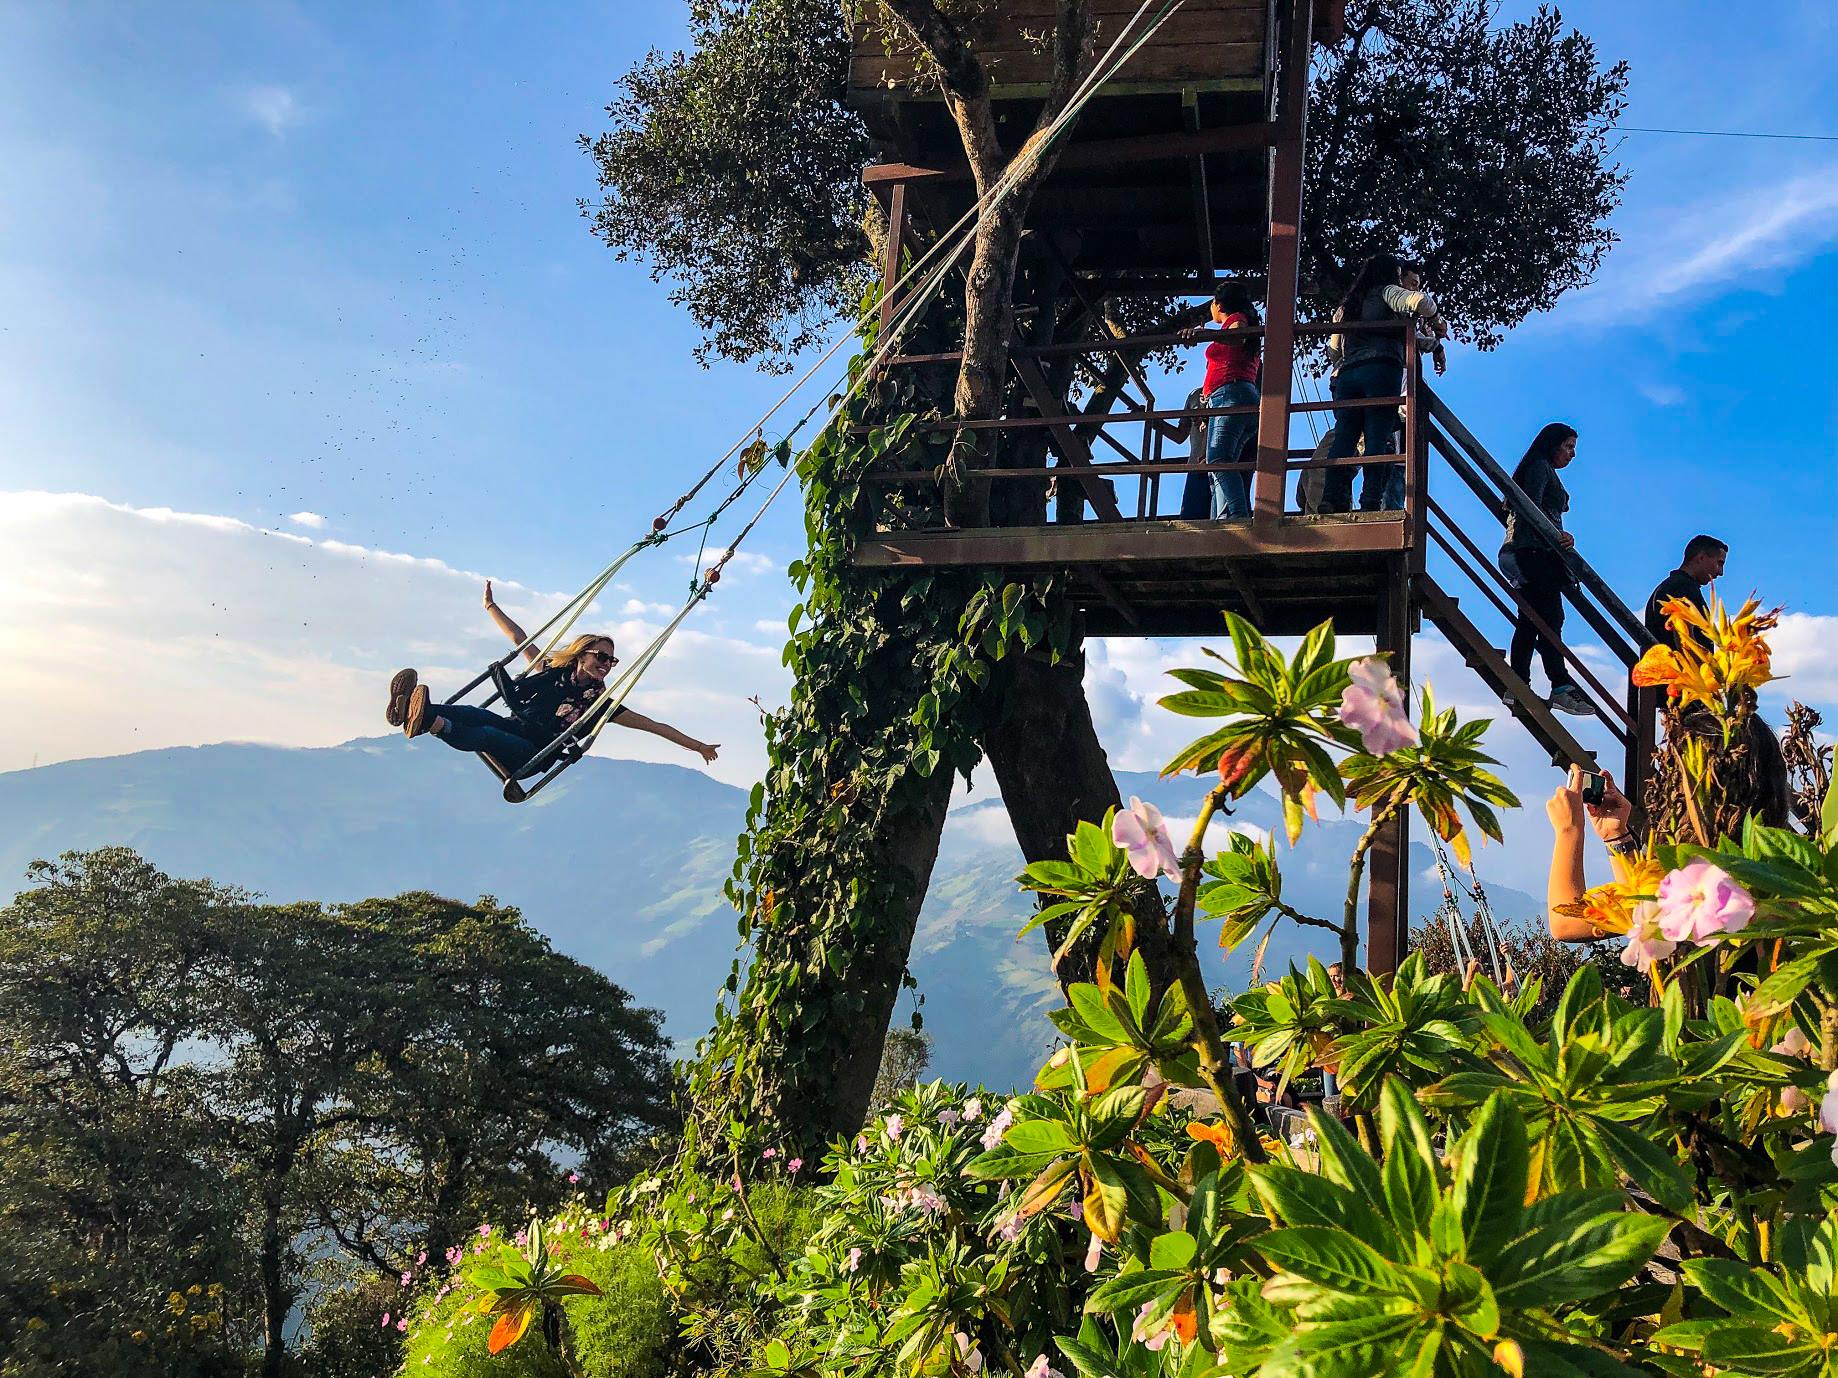 Me on a swing in Ecuador